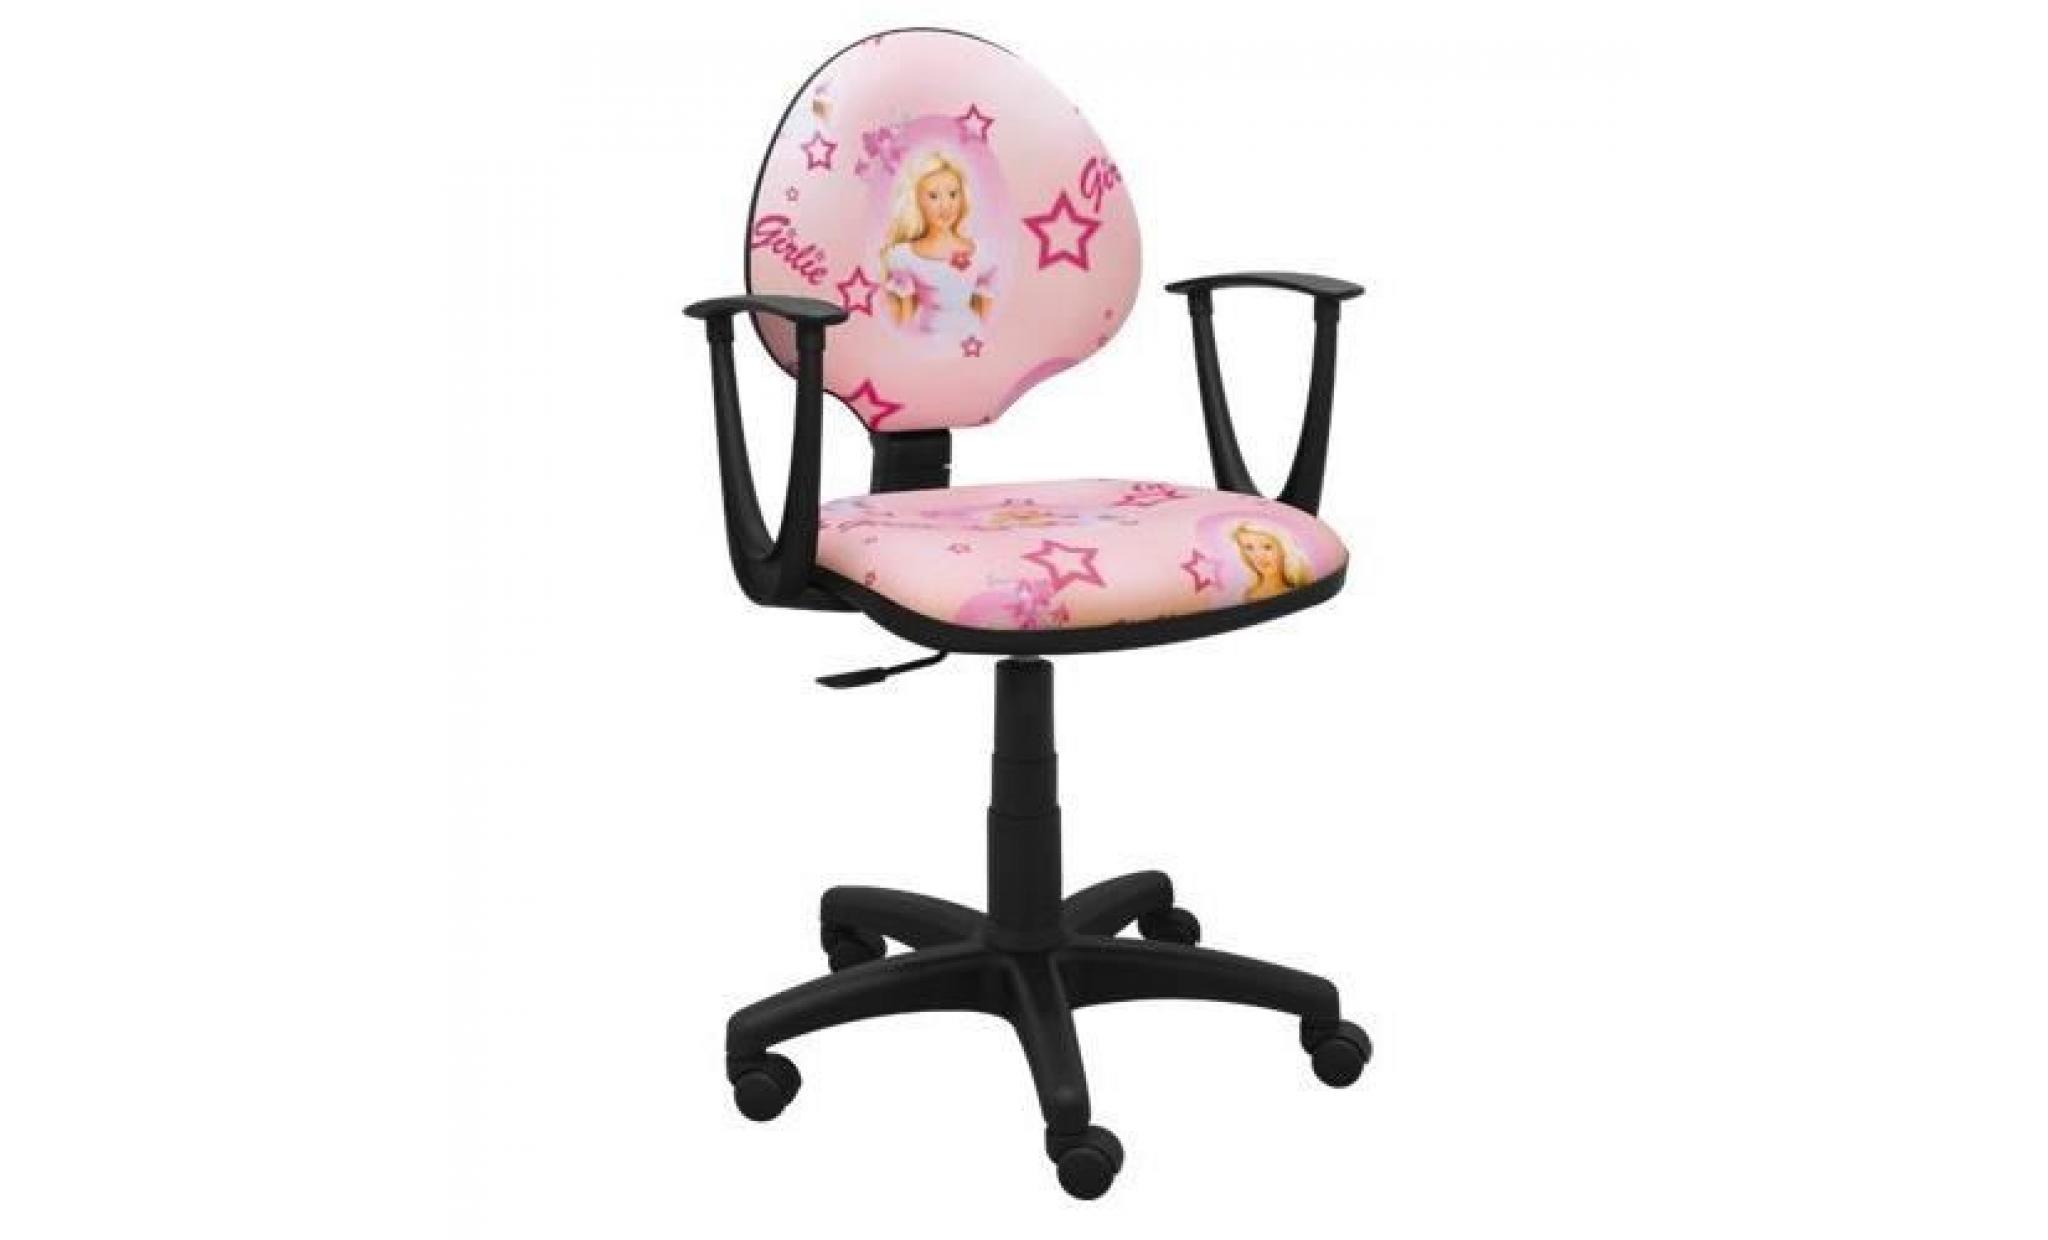 idéal pour les enfants chaise pivotante chaise de bureau pour enfants design super princesse girl (rose violet)